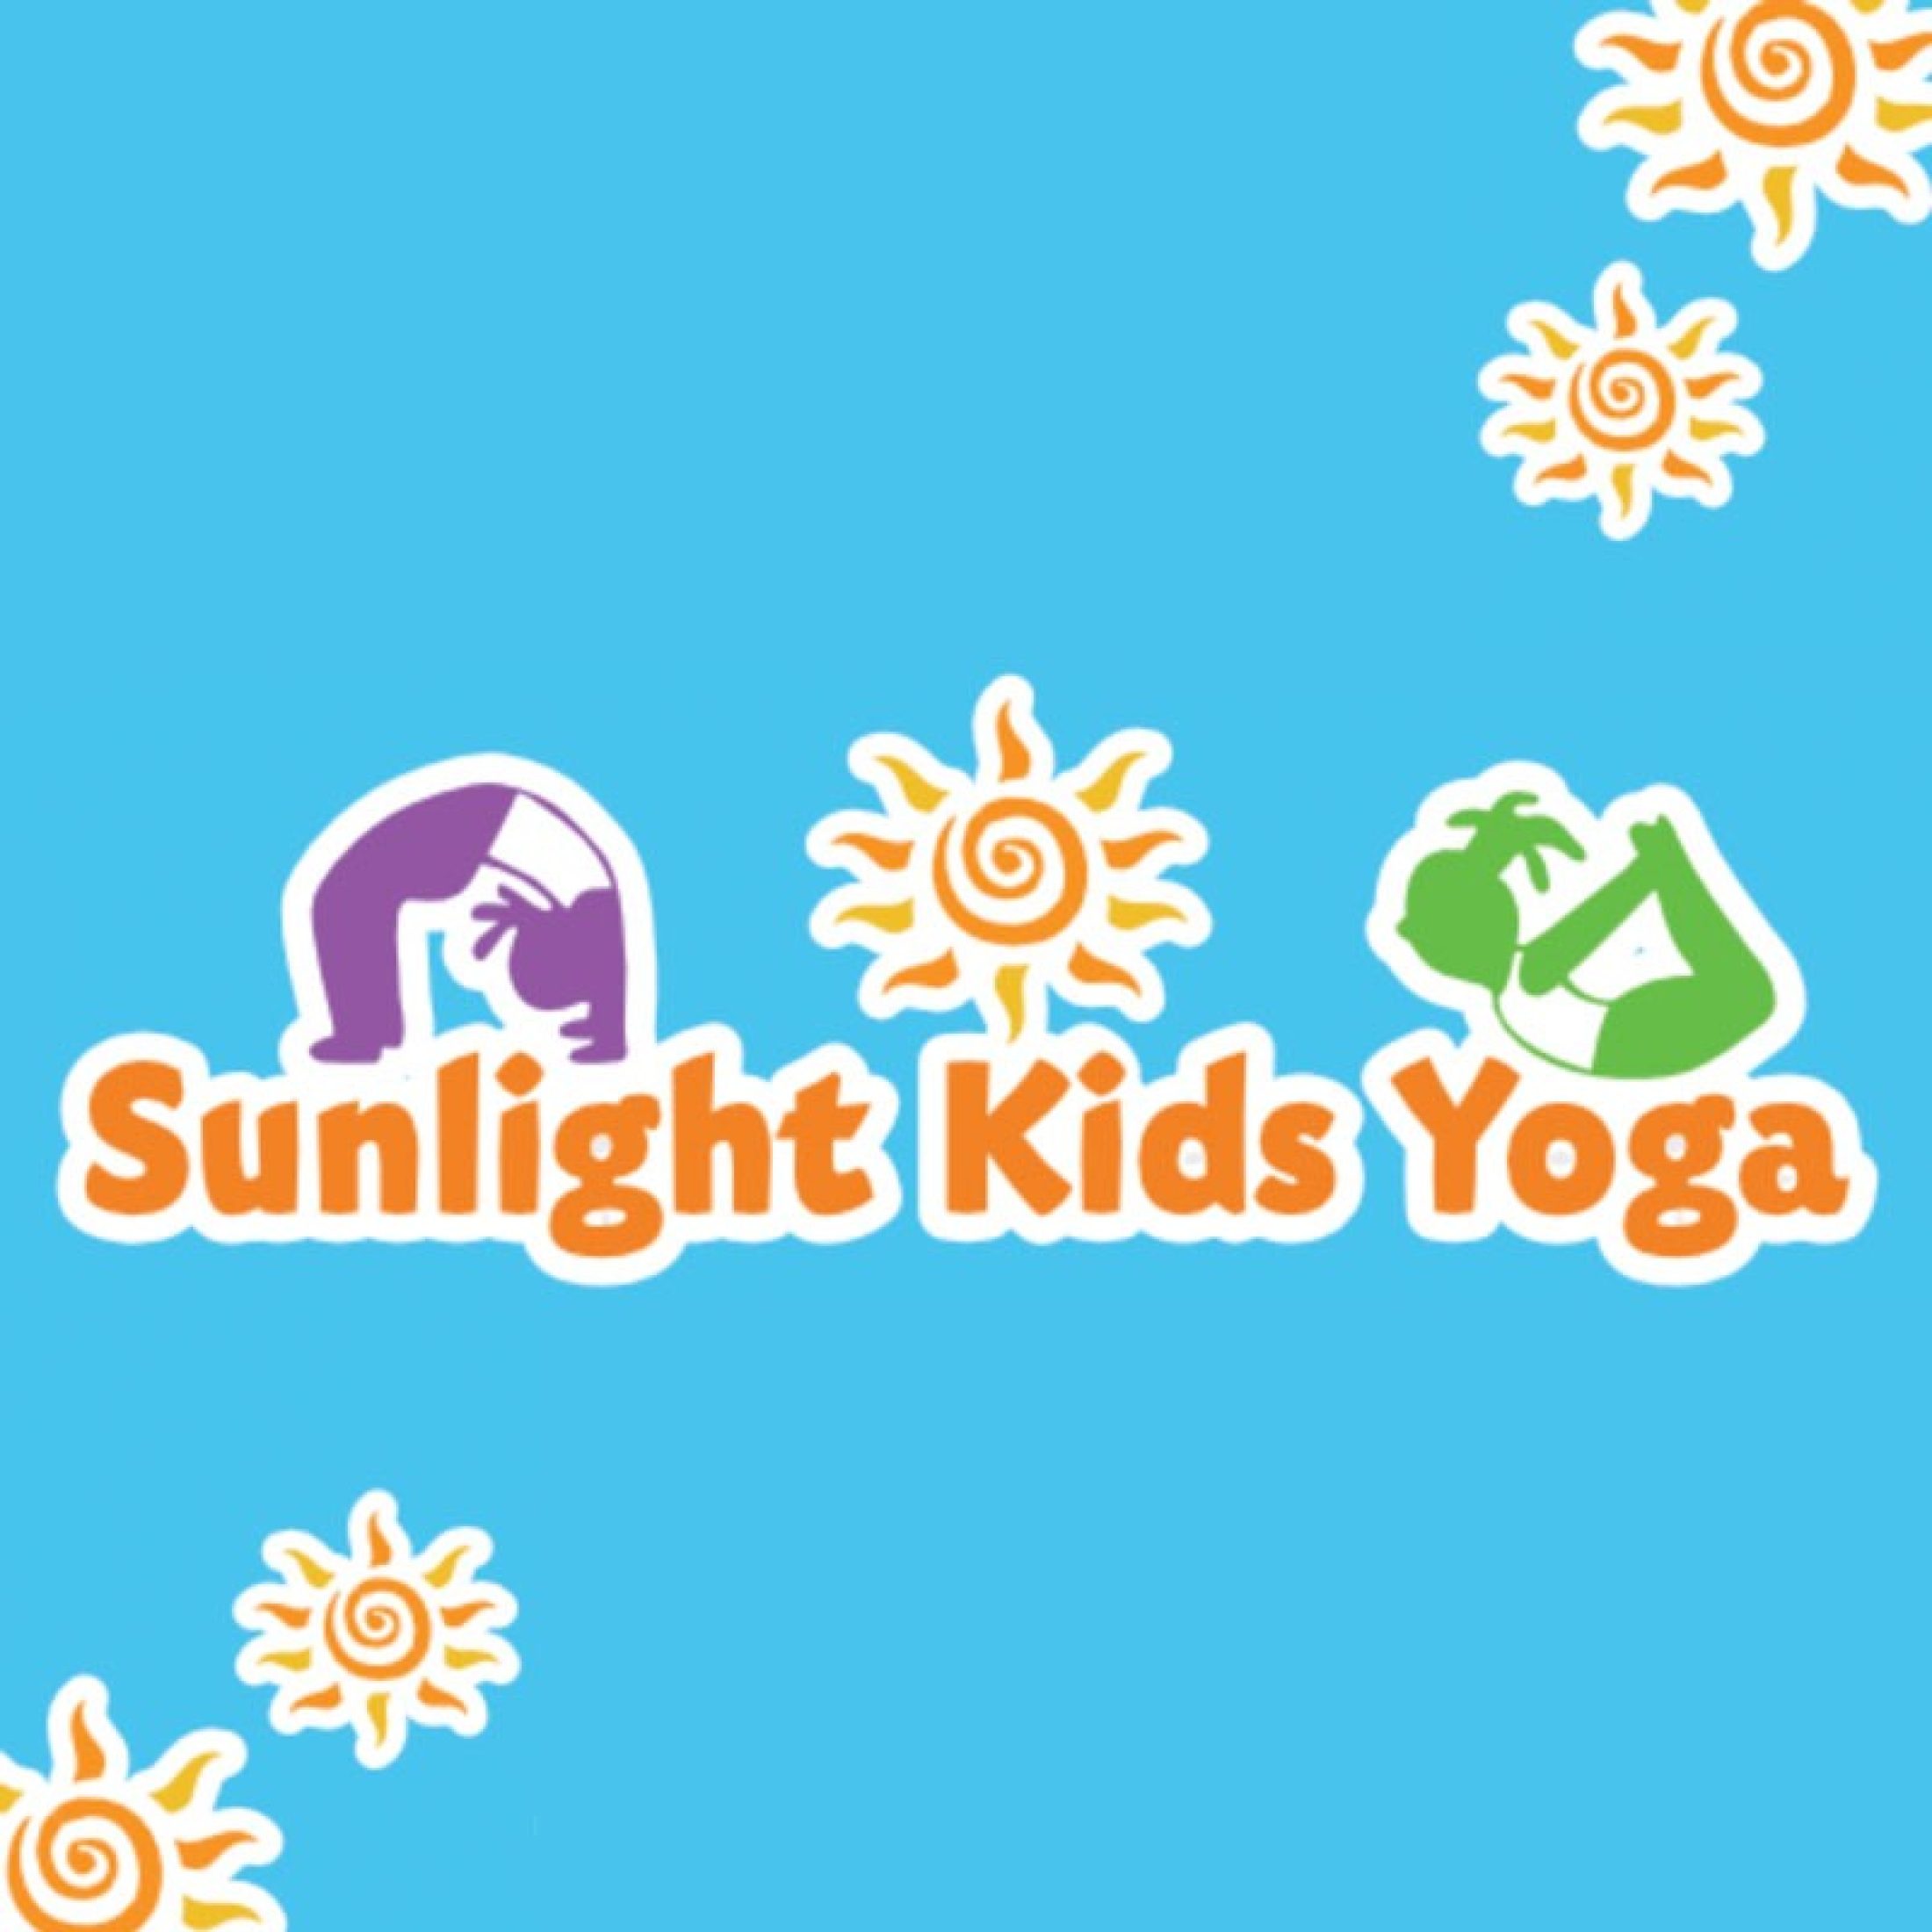 Sunlight Kids Yoga